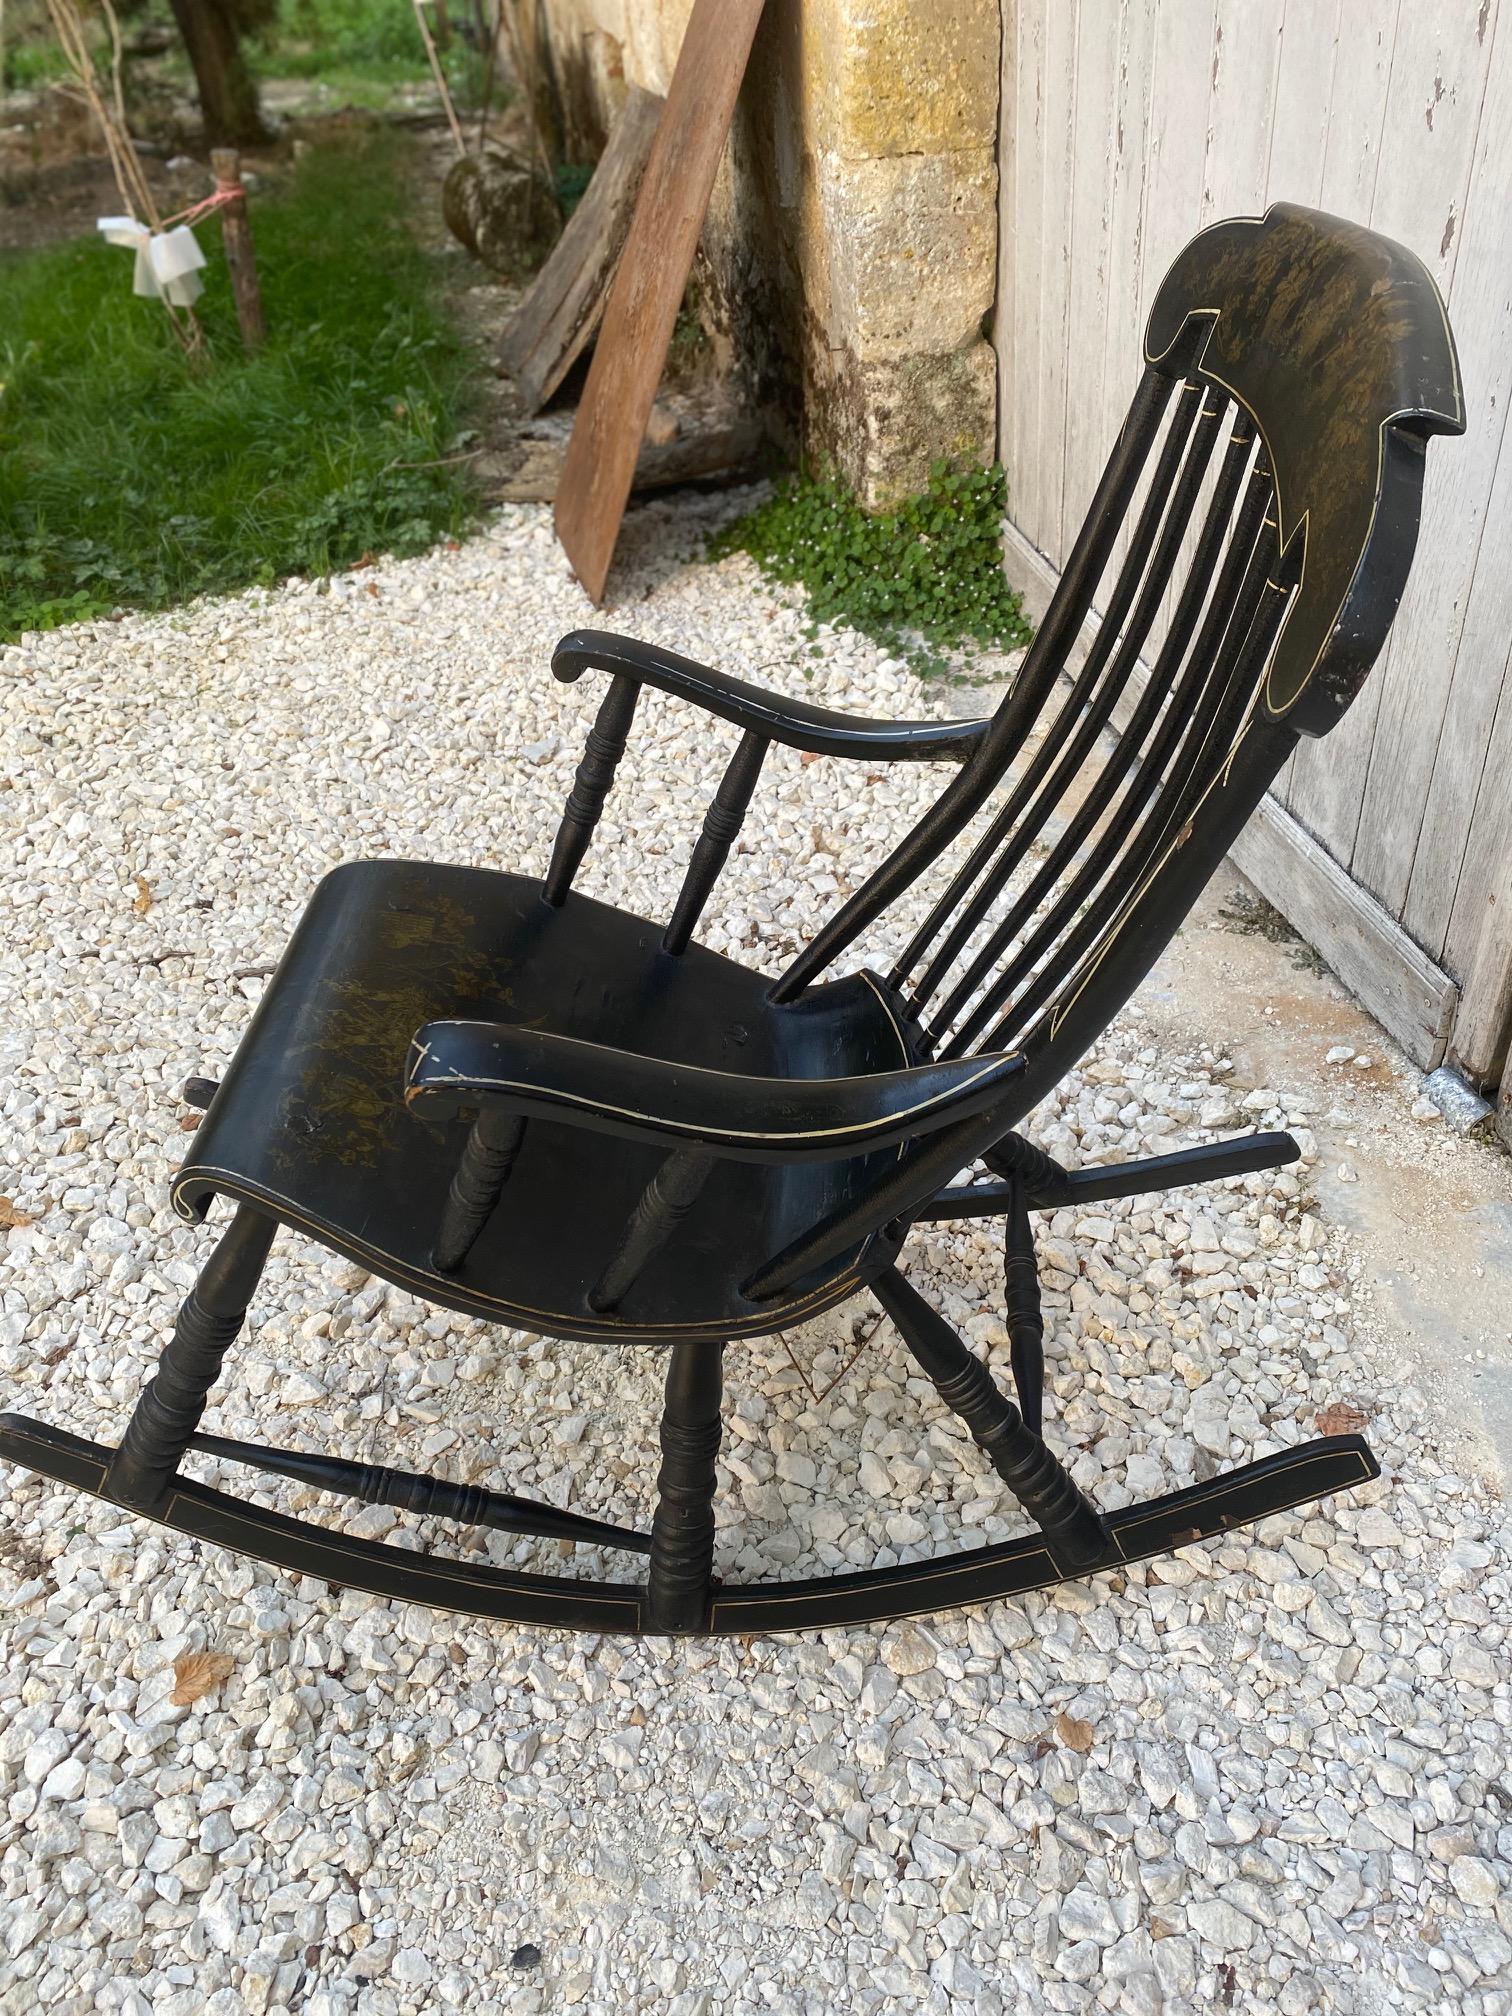 gungstol rocking chair